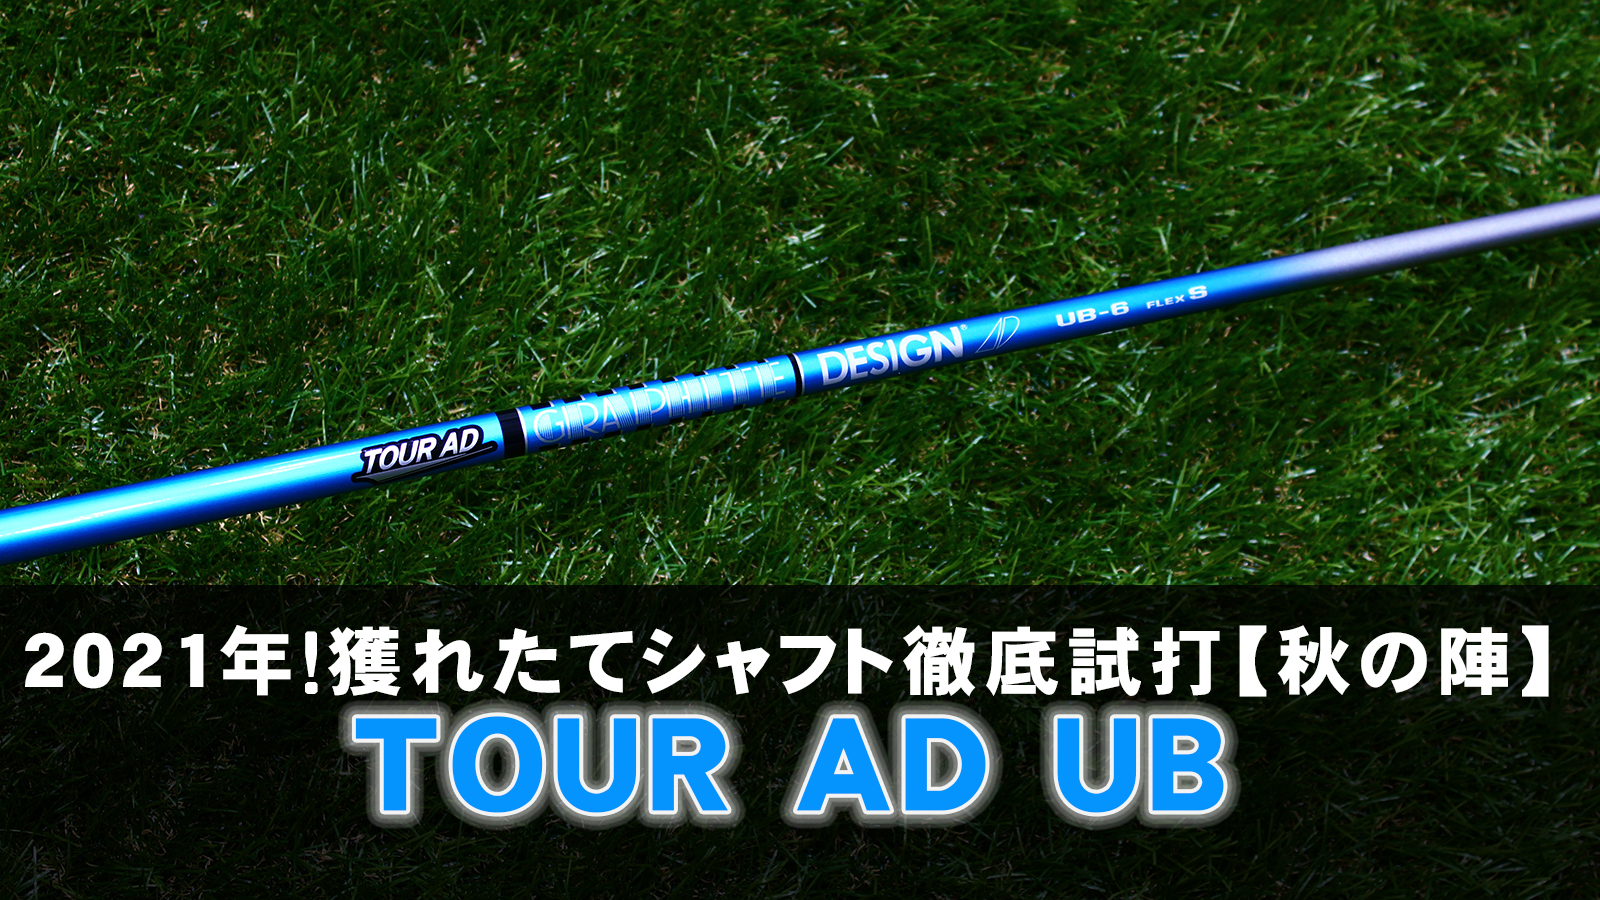 【新品・未使用】TOUR AD UB-6 FLEX S ドライバー用 シャフト